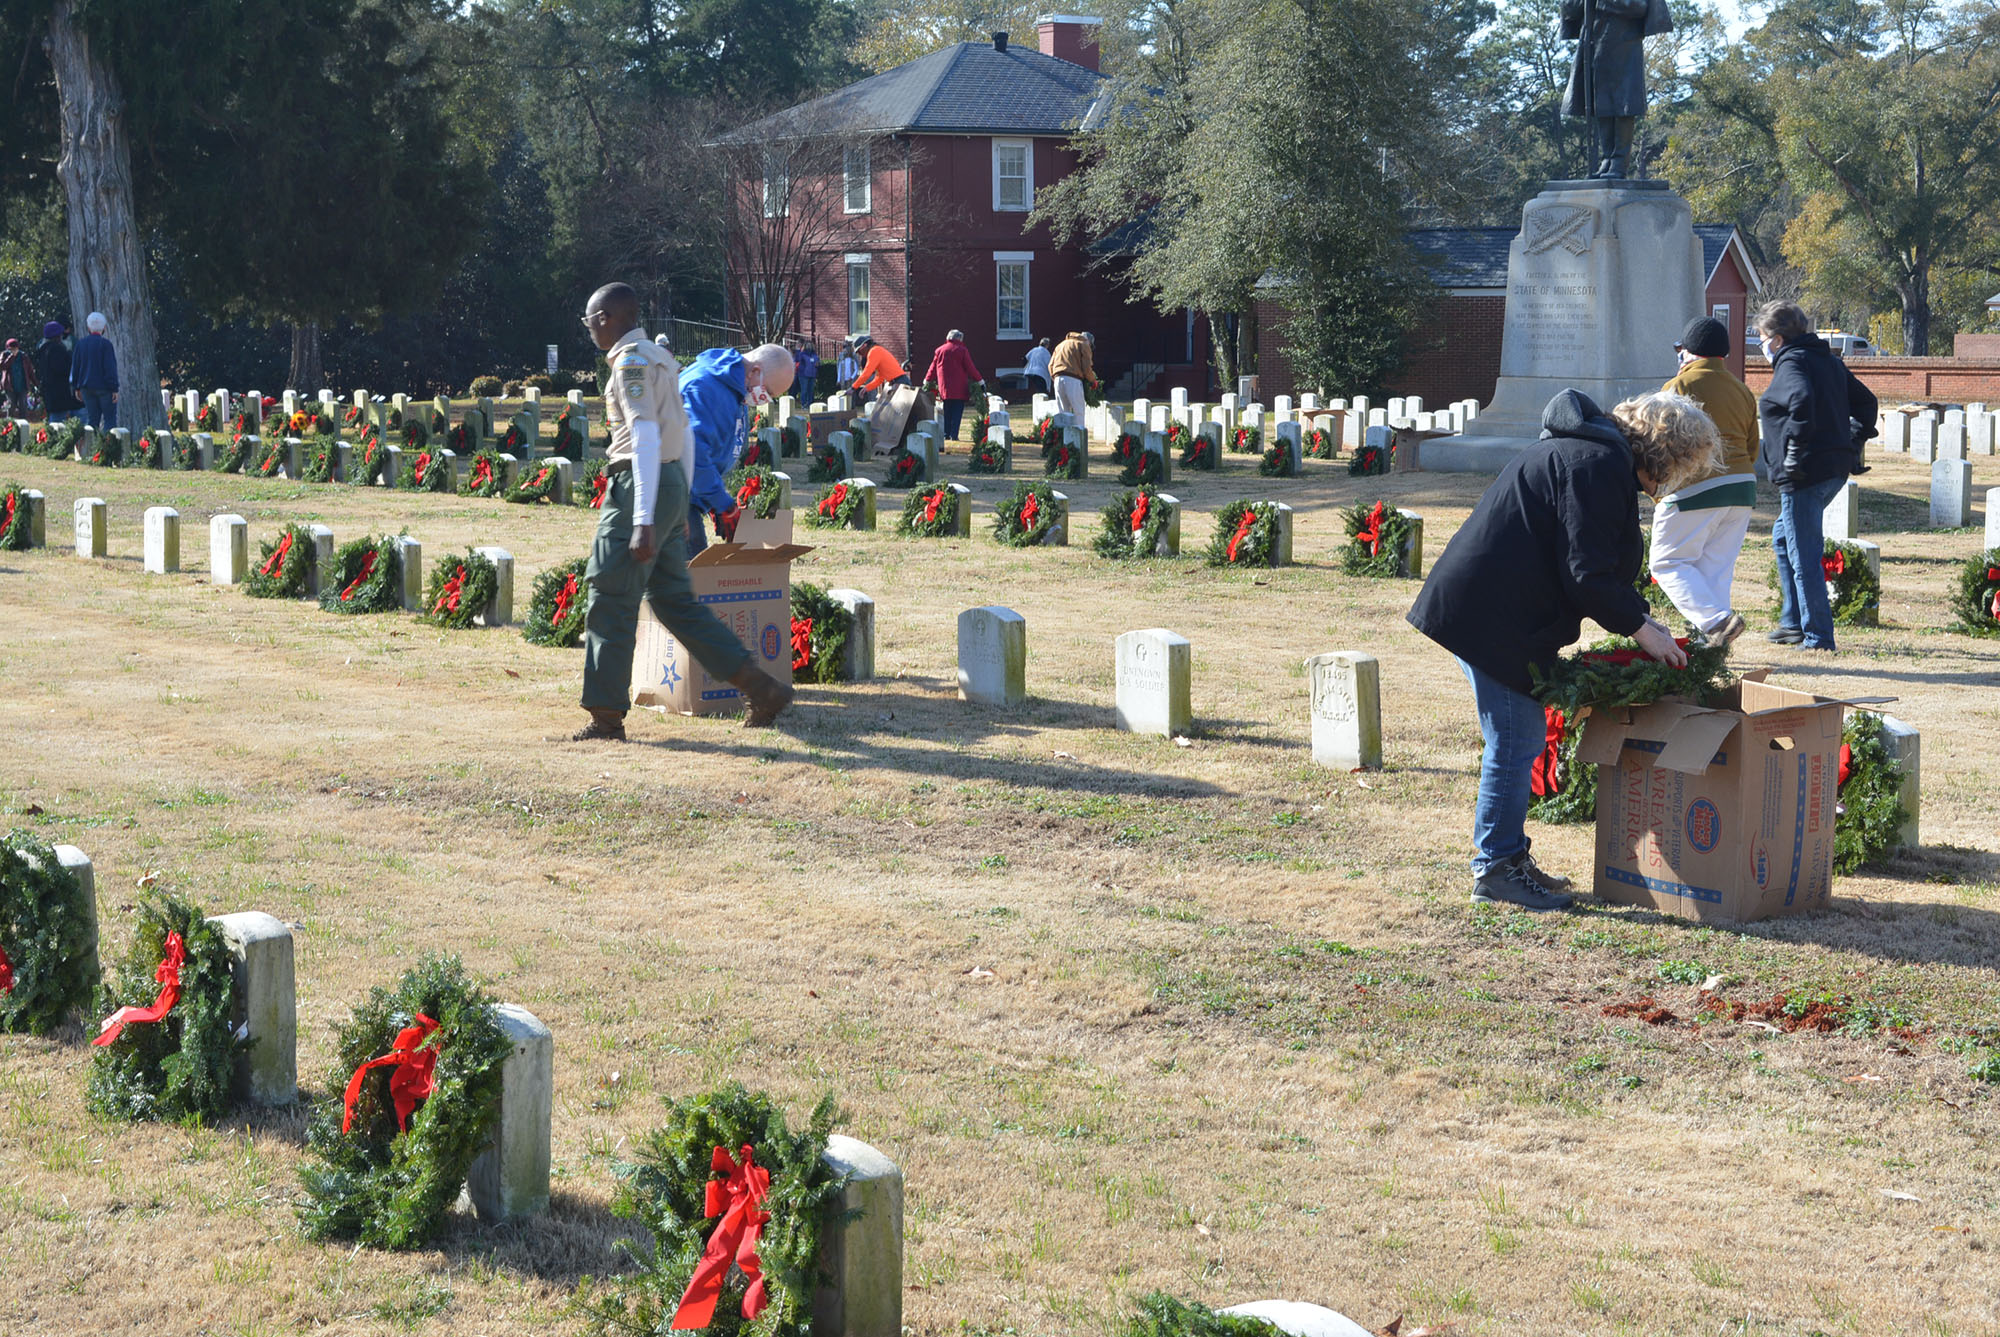 Volunteers placing wreaths on headstones